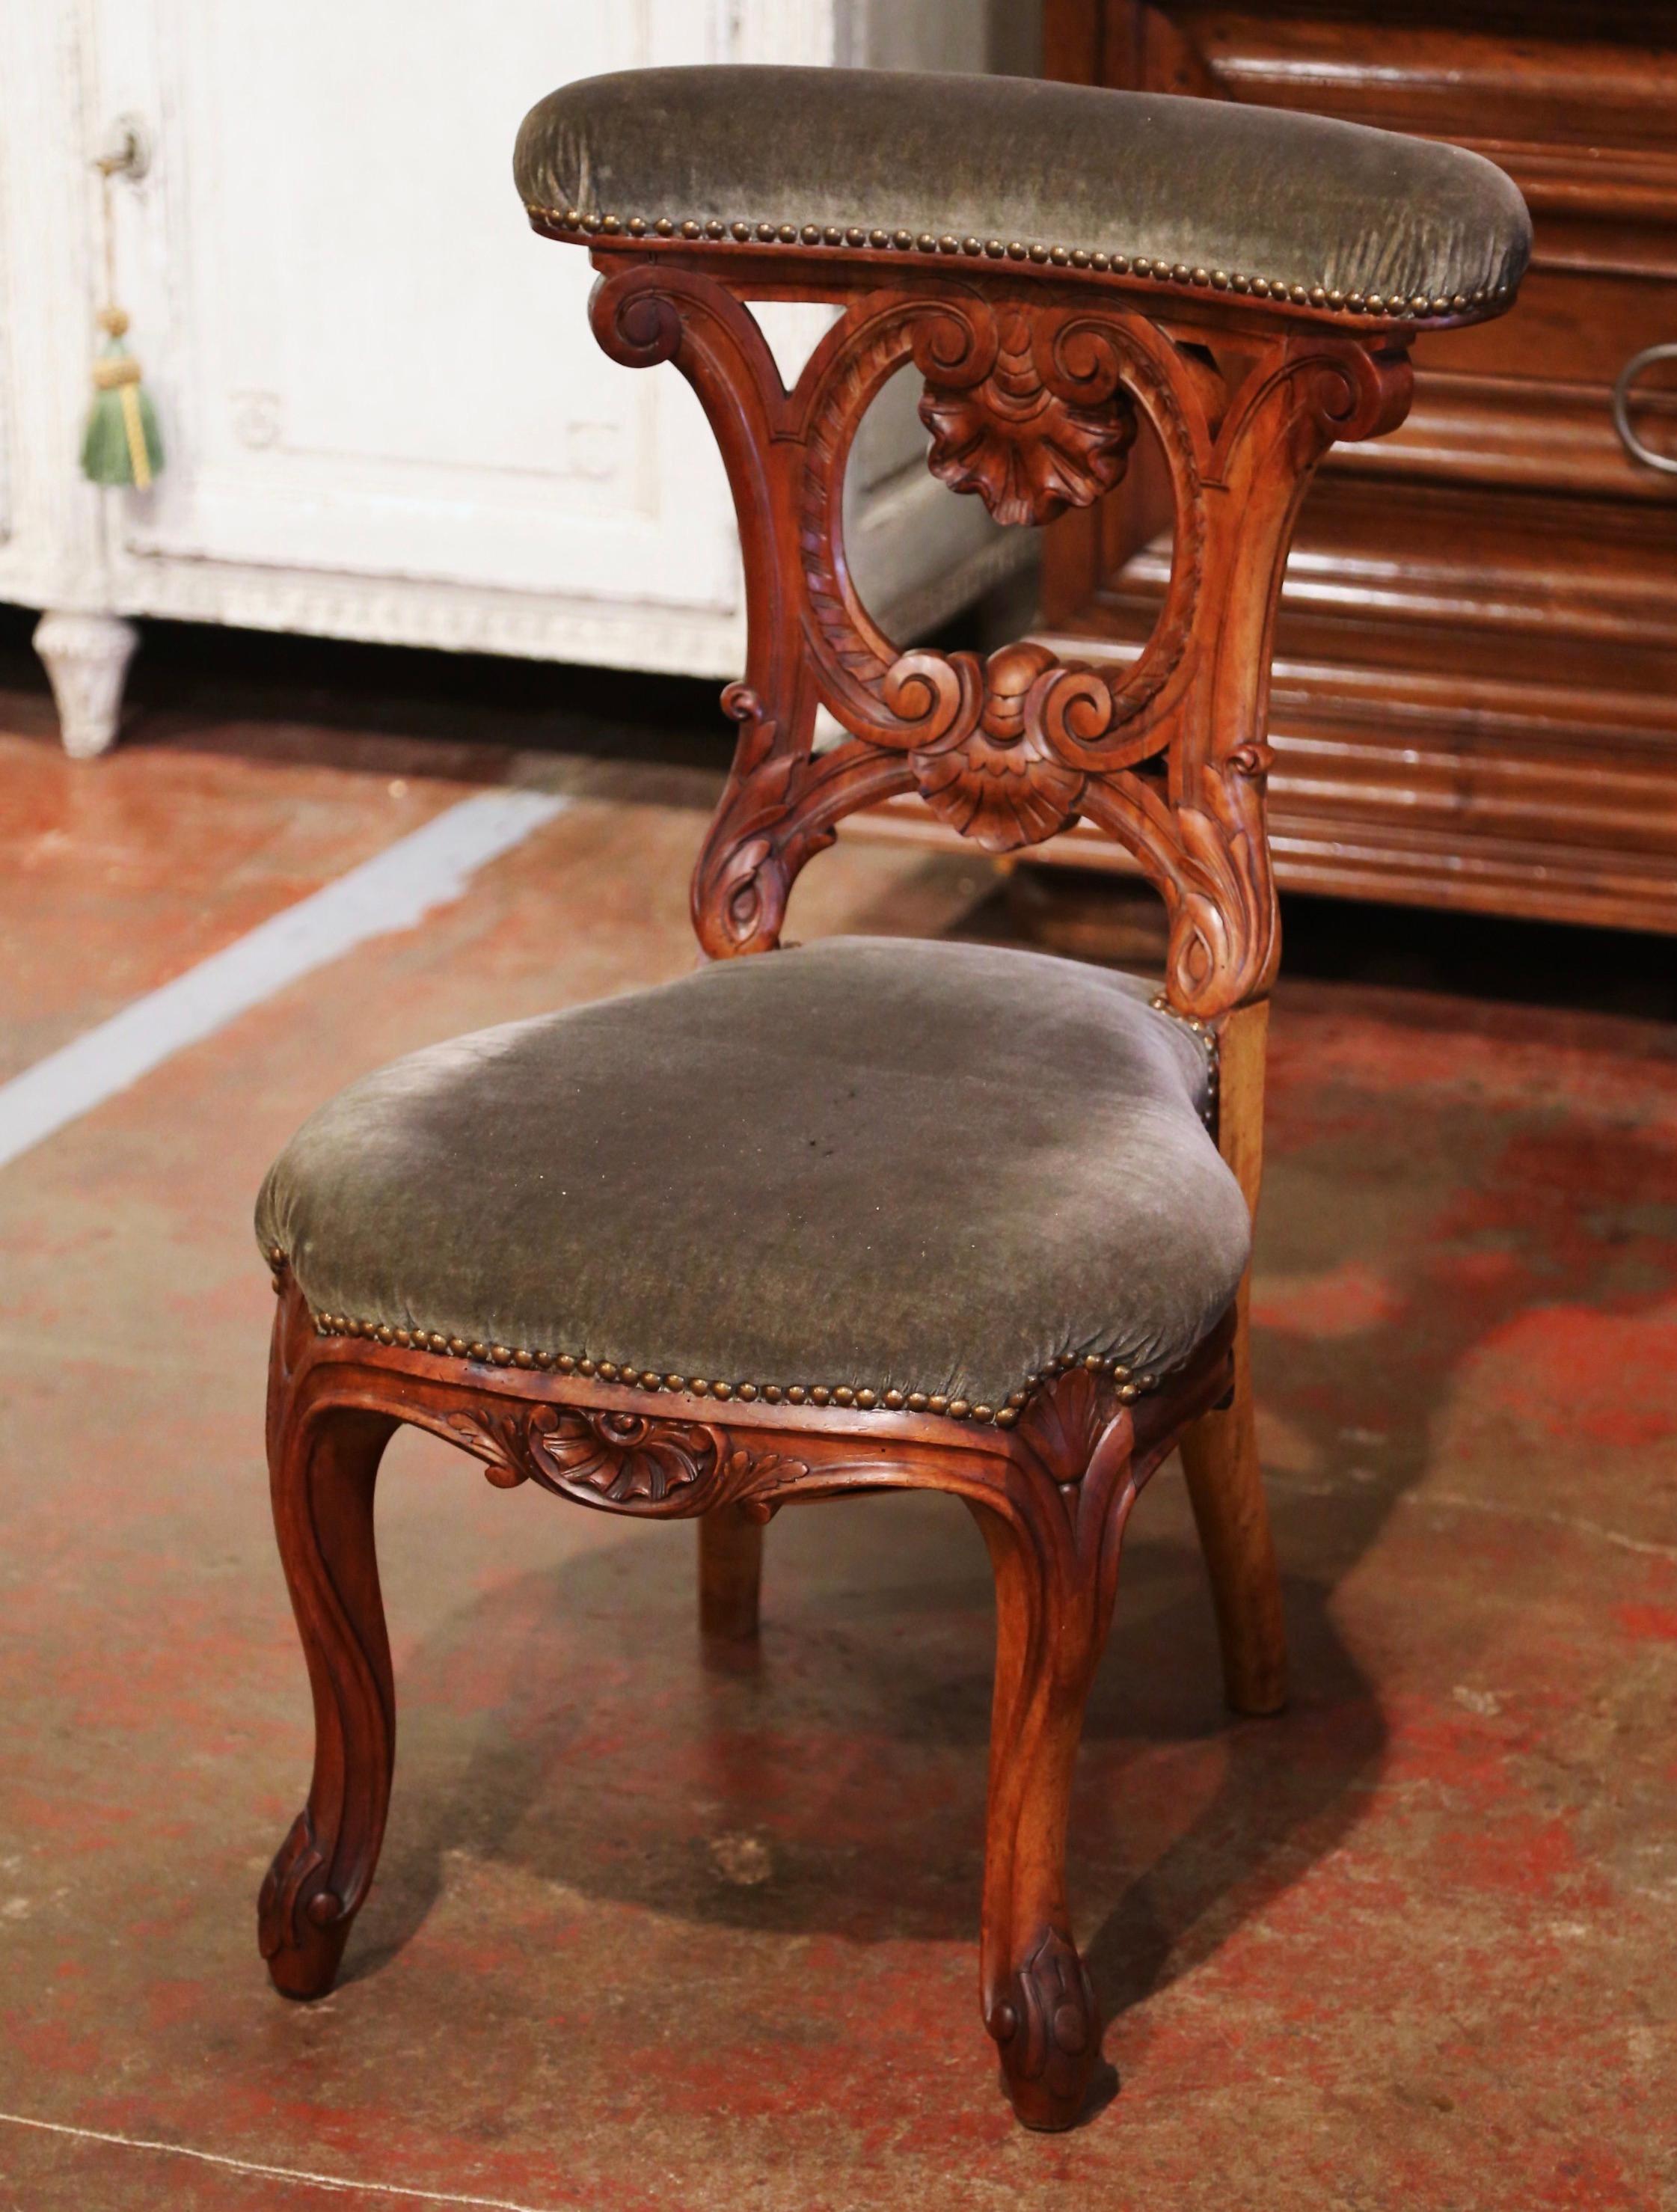 Placez cette élégante chaise de prière antique dans votre chambre à coucher pour vos dévotions quotidiennes. Fabriqué en France, vers 1870, cet agenouilloir traditionnel repose sur des pieds cabriole se terminant par des pieds à volutes au-dessus